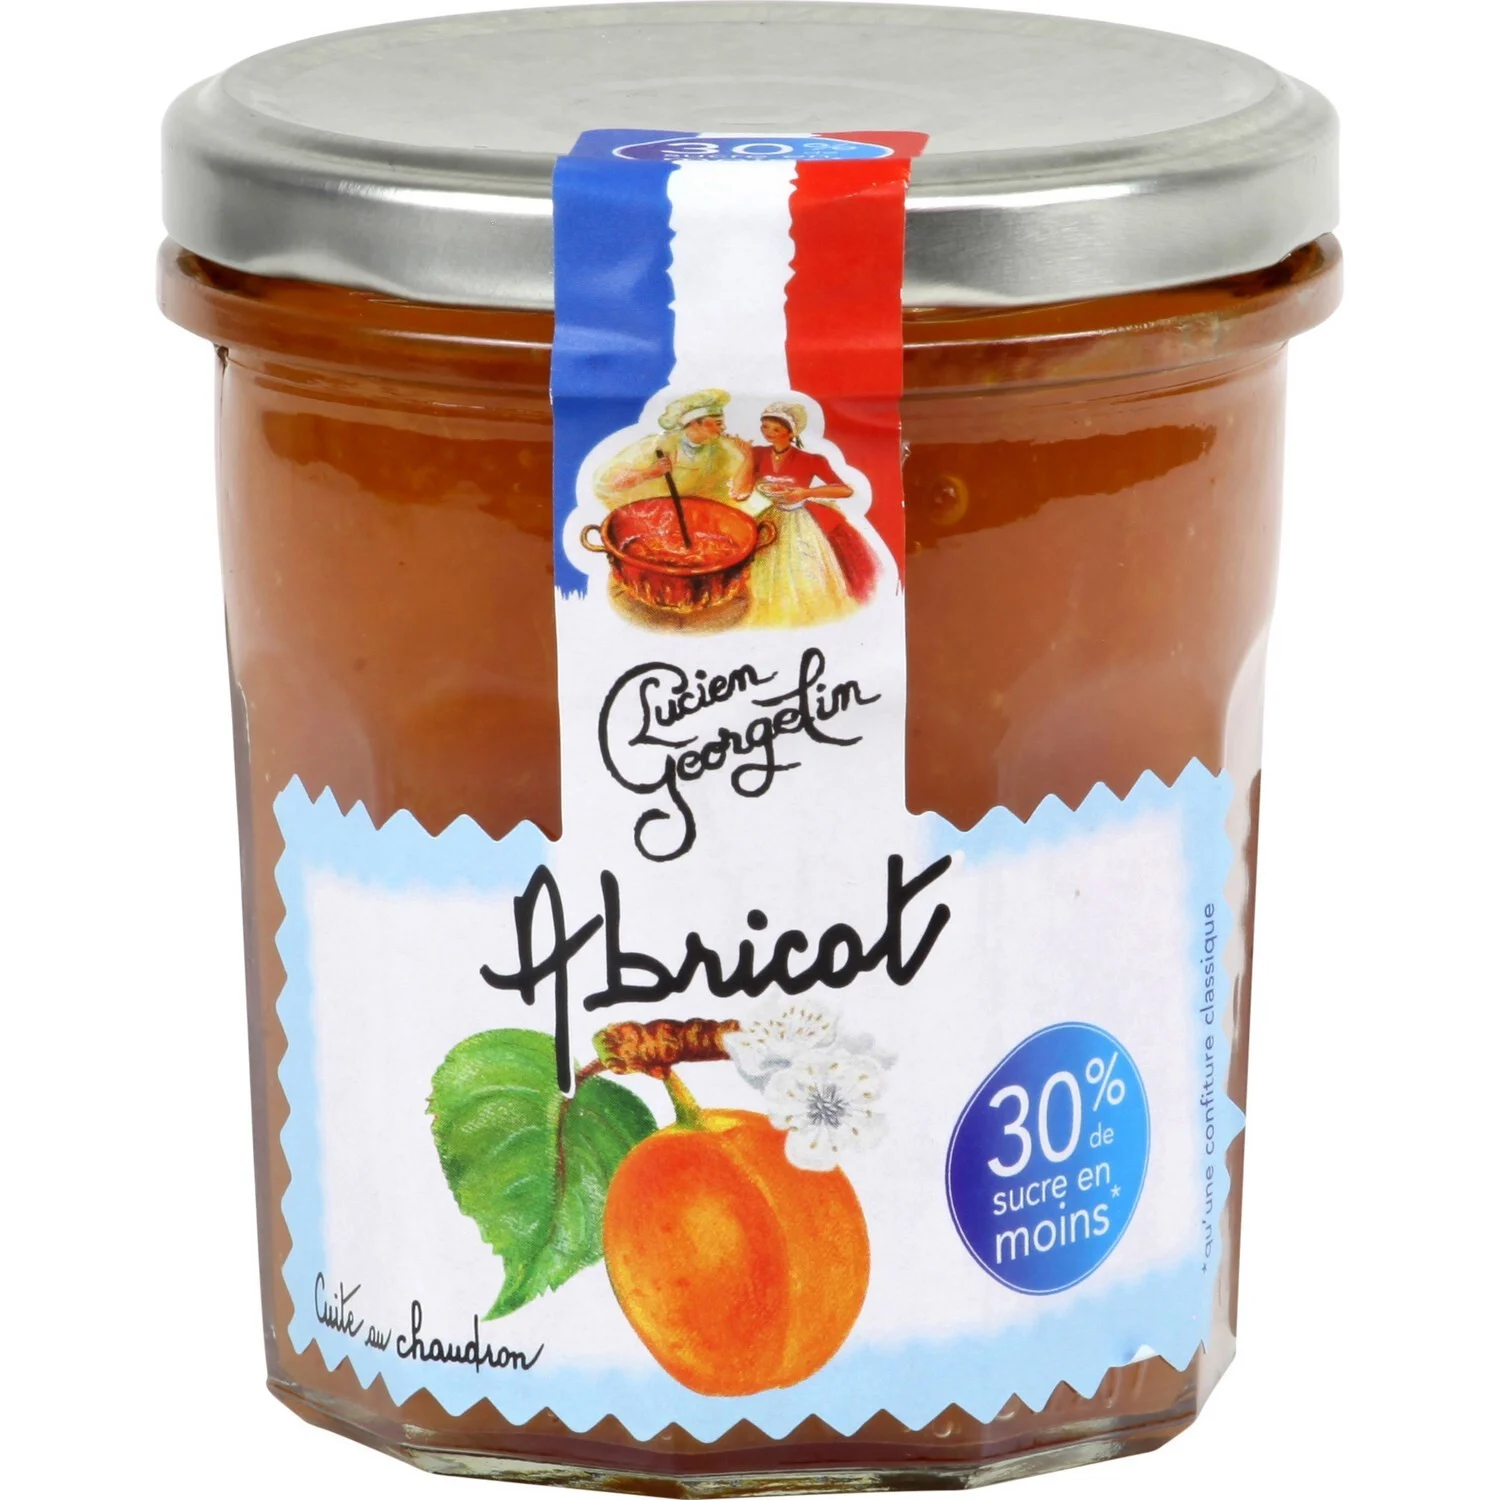 Gastronomische en lichte abrikozenjam
Gouden medaille op het Concours Général Agricole de Paris 2019 320g - LUCIEN GEORGELIN